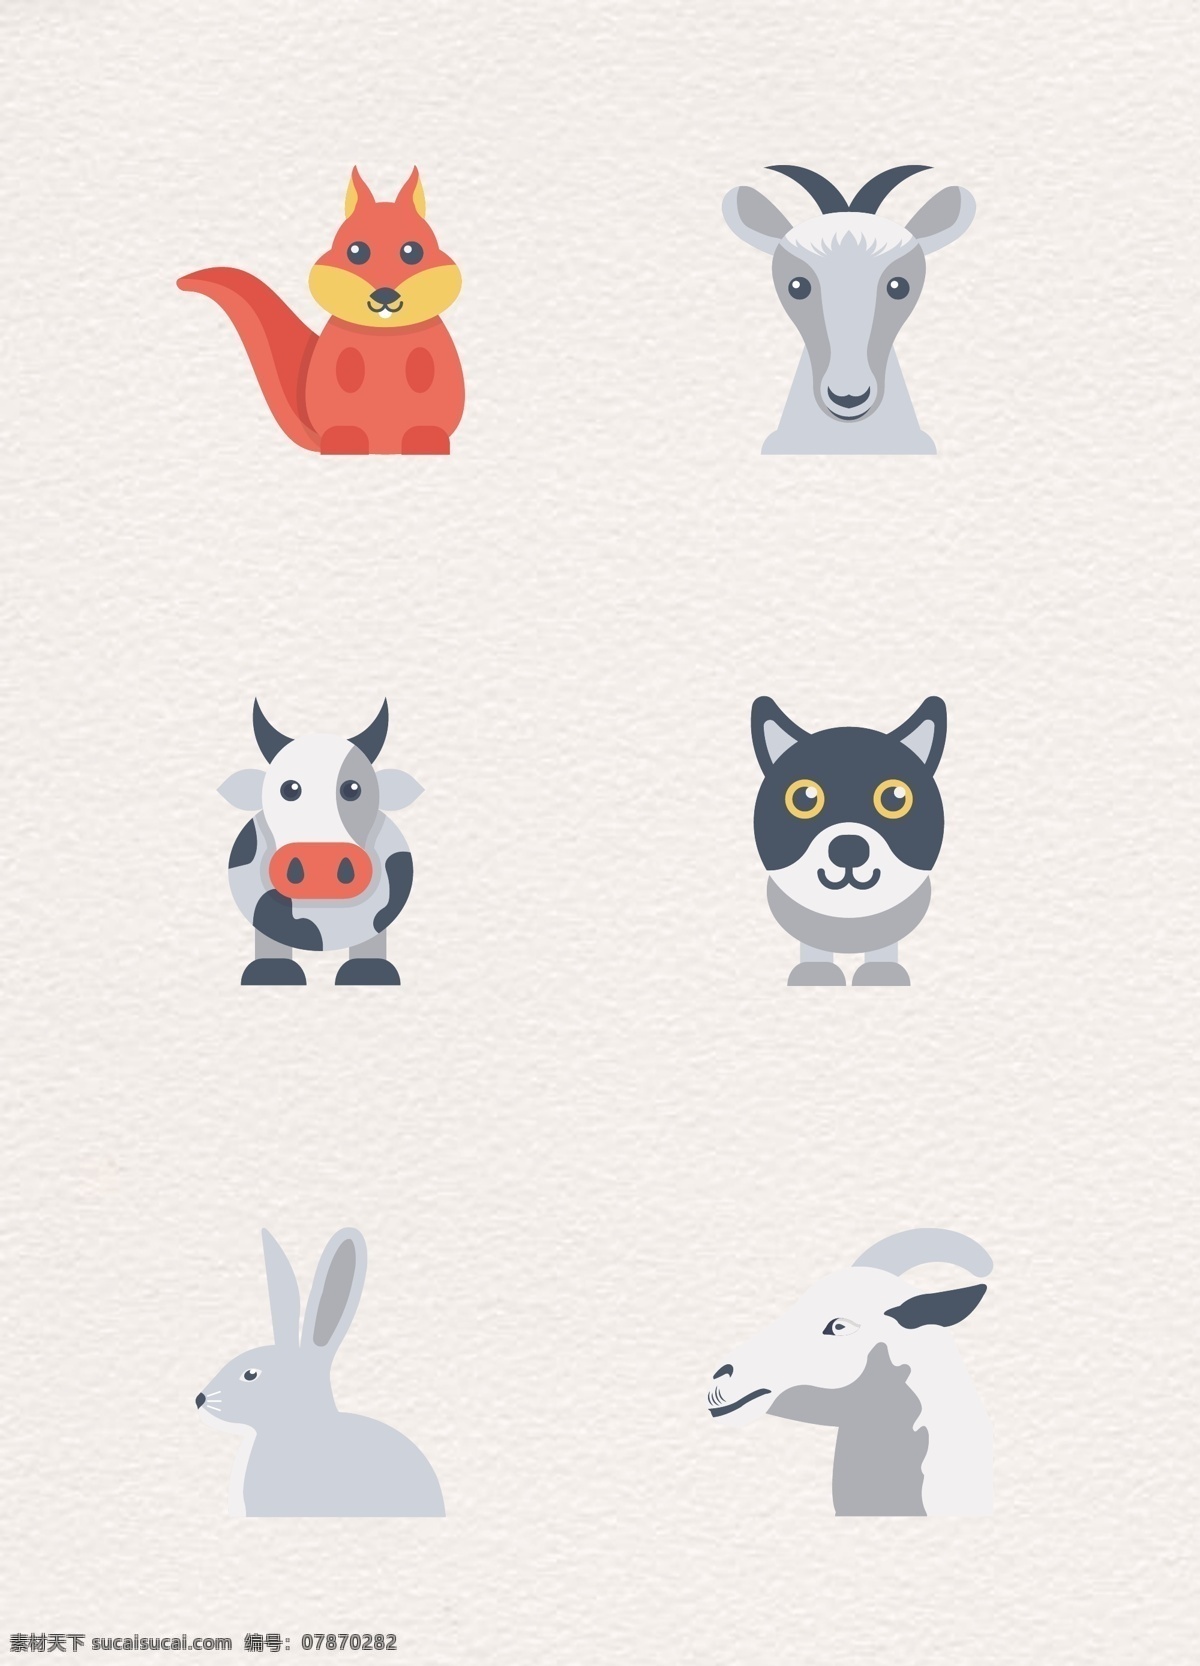 扁平化 可爱 小 动物 矢量 图标素材 卡通 山羊 图标设计 小动物 小狐狸 小猪 小兔子